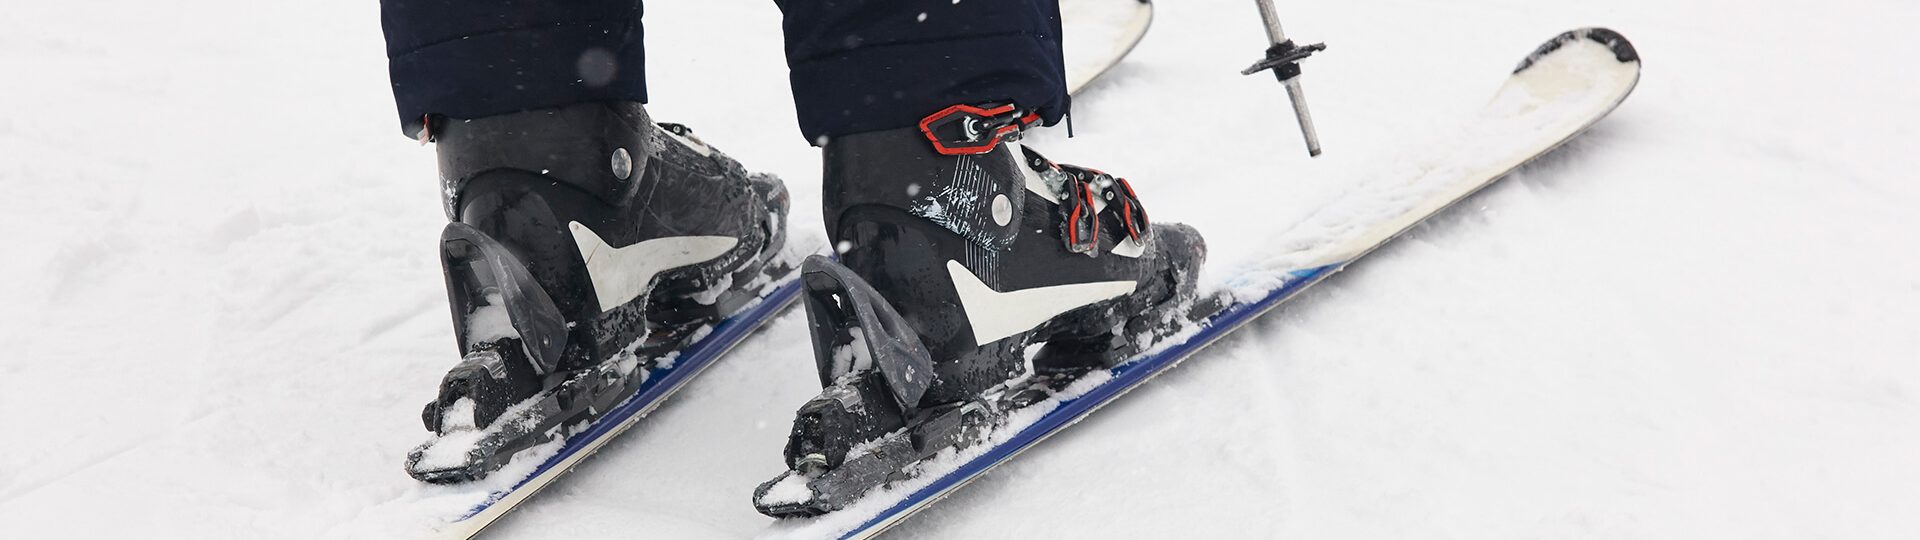 ski-schuhanpassung-sport-kraus-landstuhl-wintersport.jpg